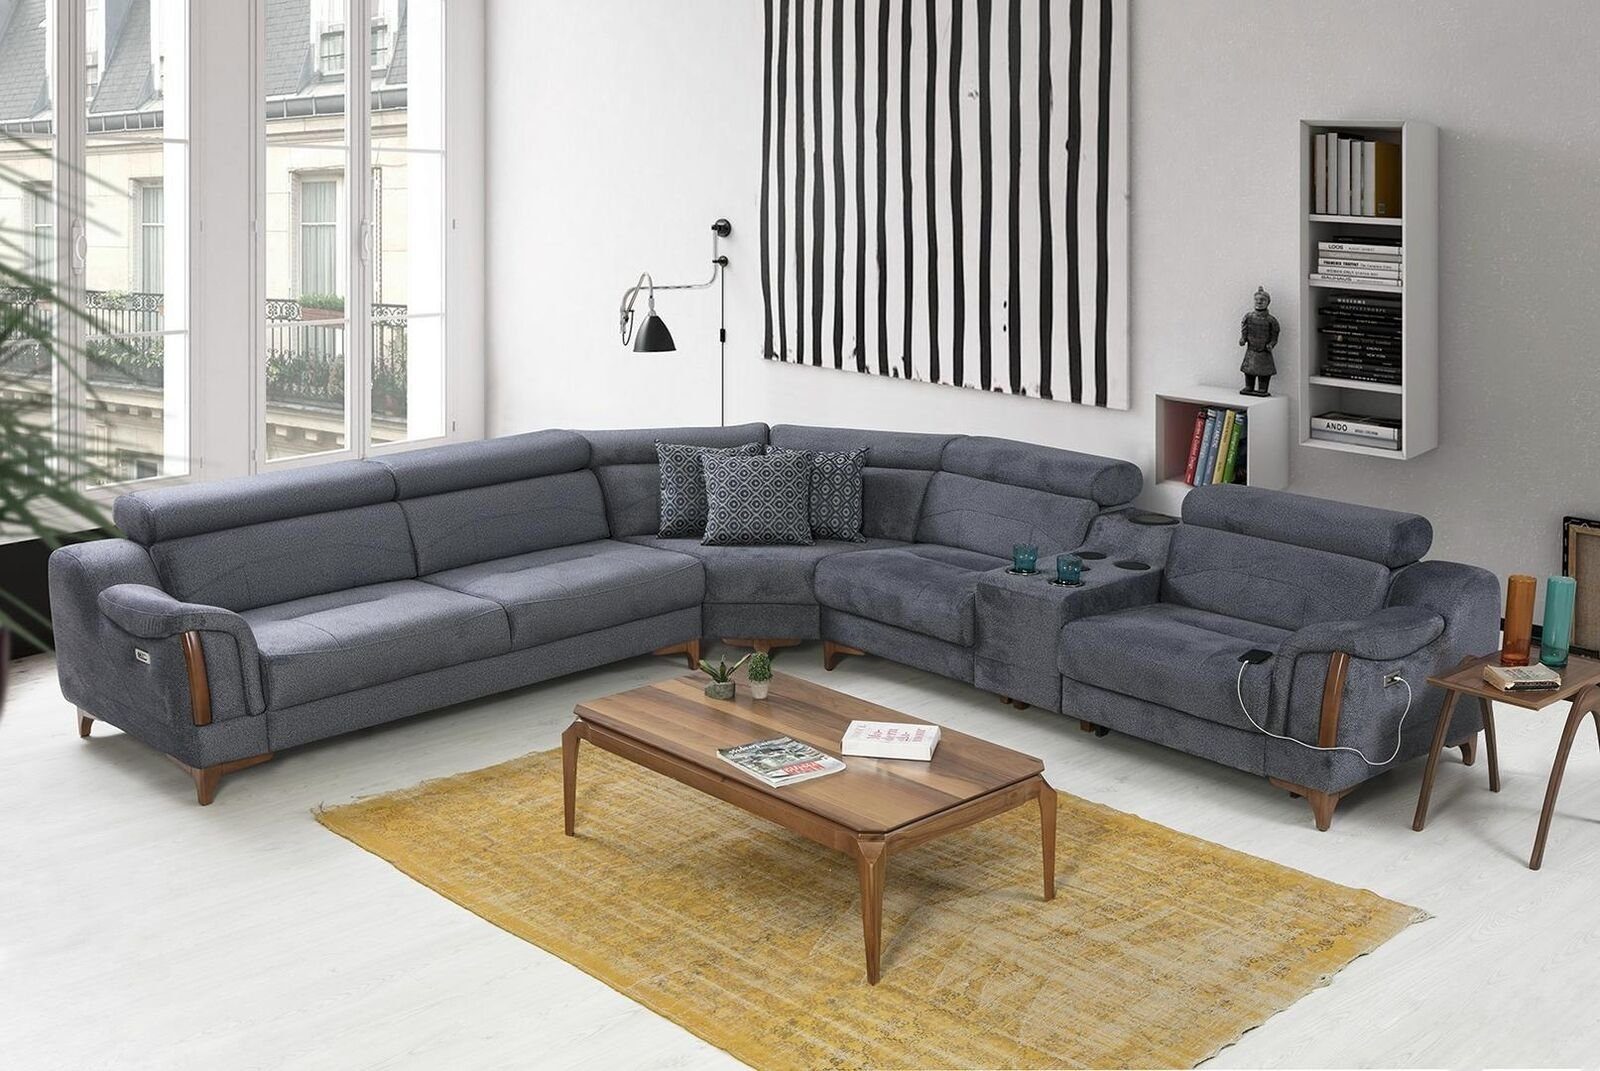 JVmoebel Ecksofa L-Form Made Ecksofa Modern 5 in Sofa Luxus Grau Teile, Möbel, Wohnzimmer Europa Design